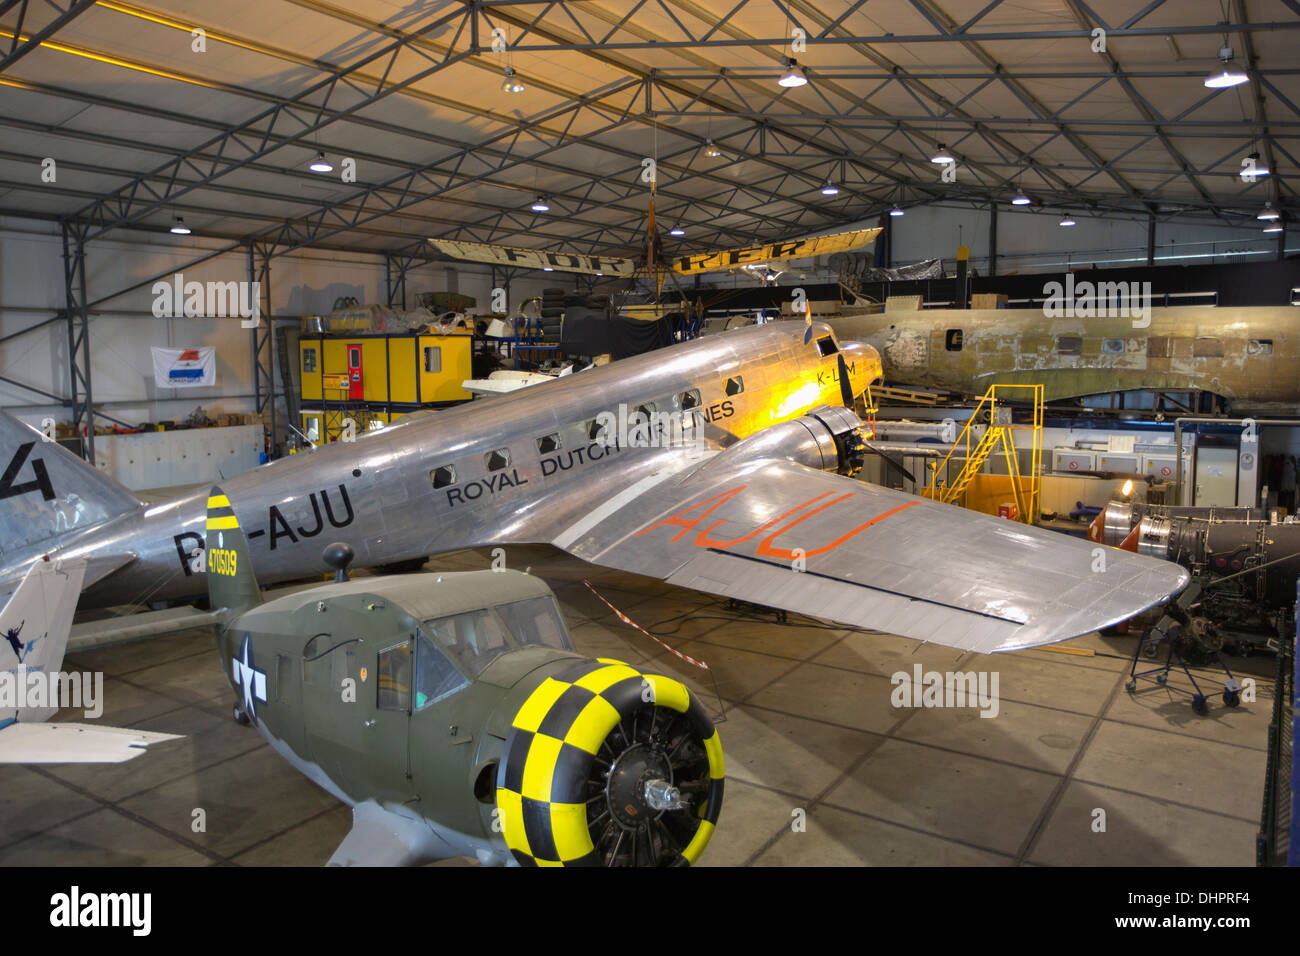 Pays-bas, Lelystad, Aviodrome, musée d'histoire de l'aviation. Douglas DC-3 Dakota de KLM, Royal Dutch Airlines Banque D'Images